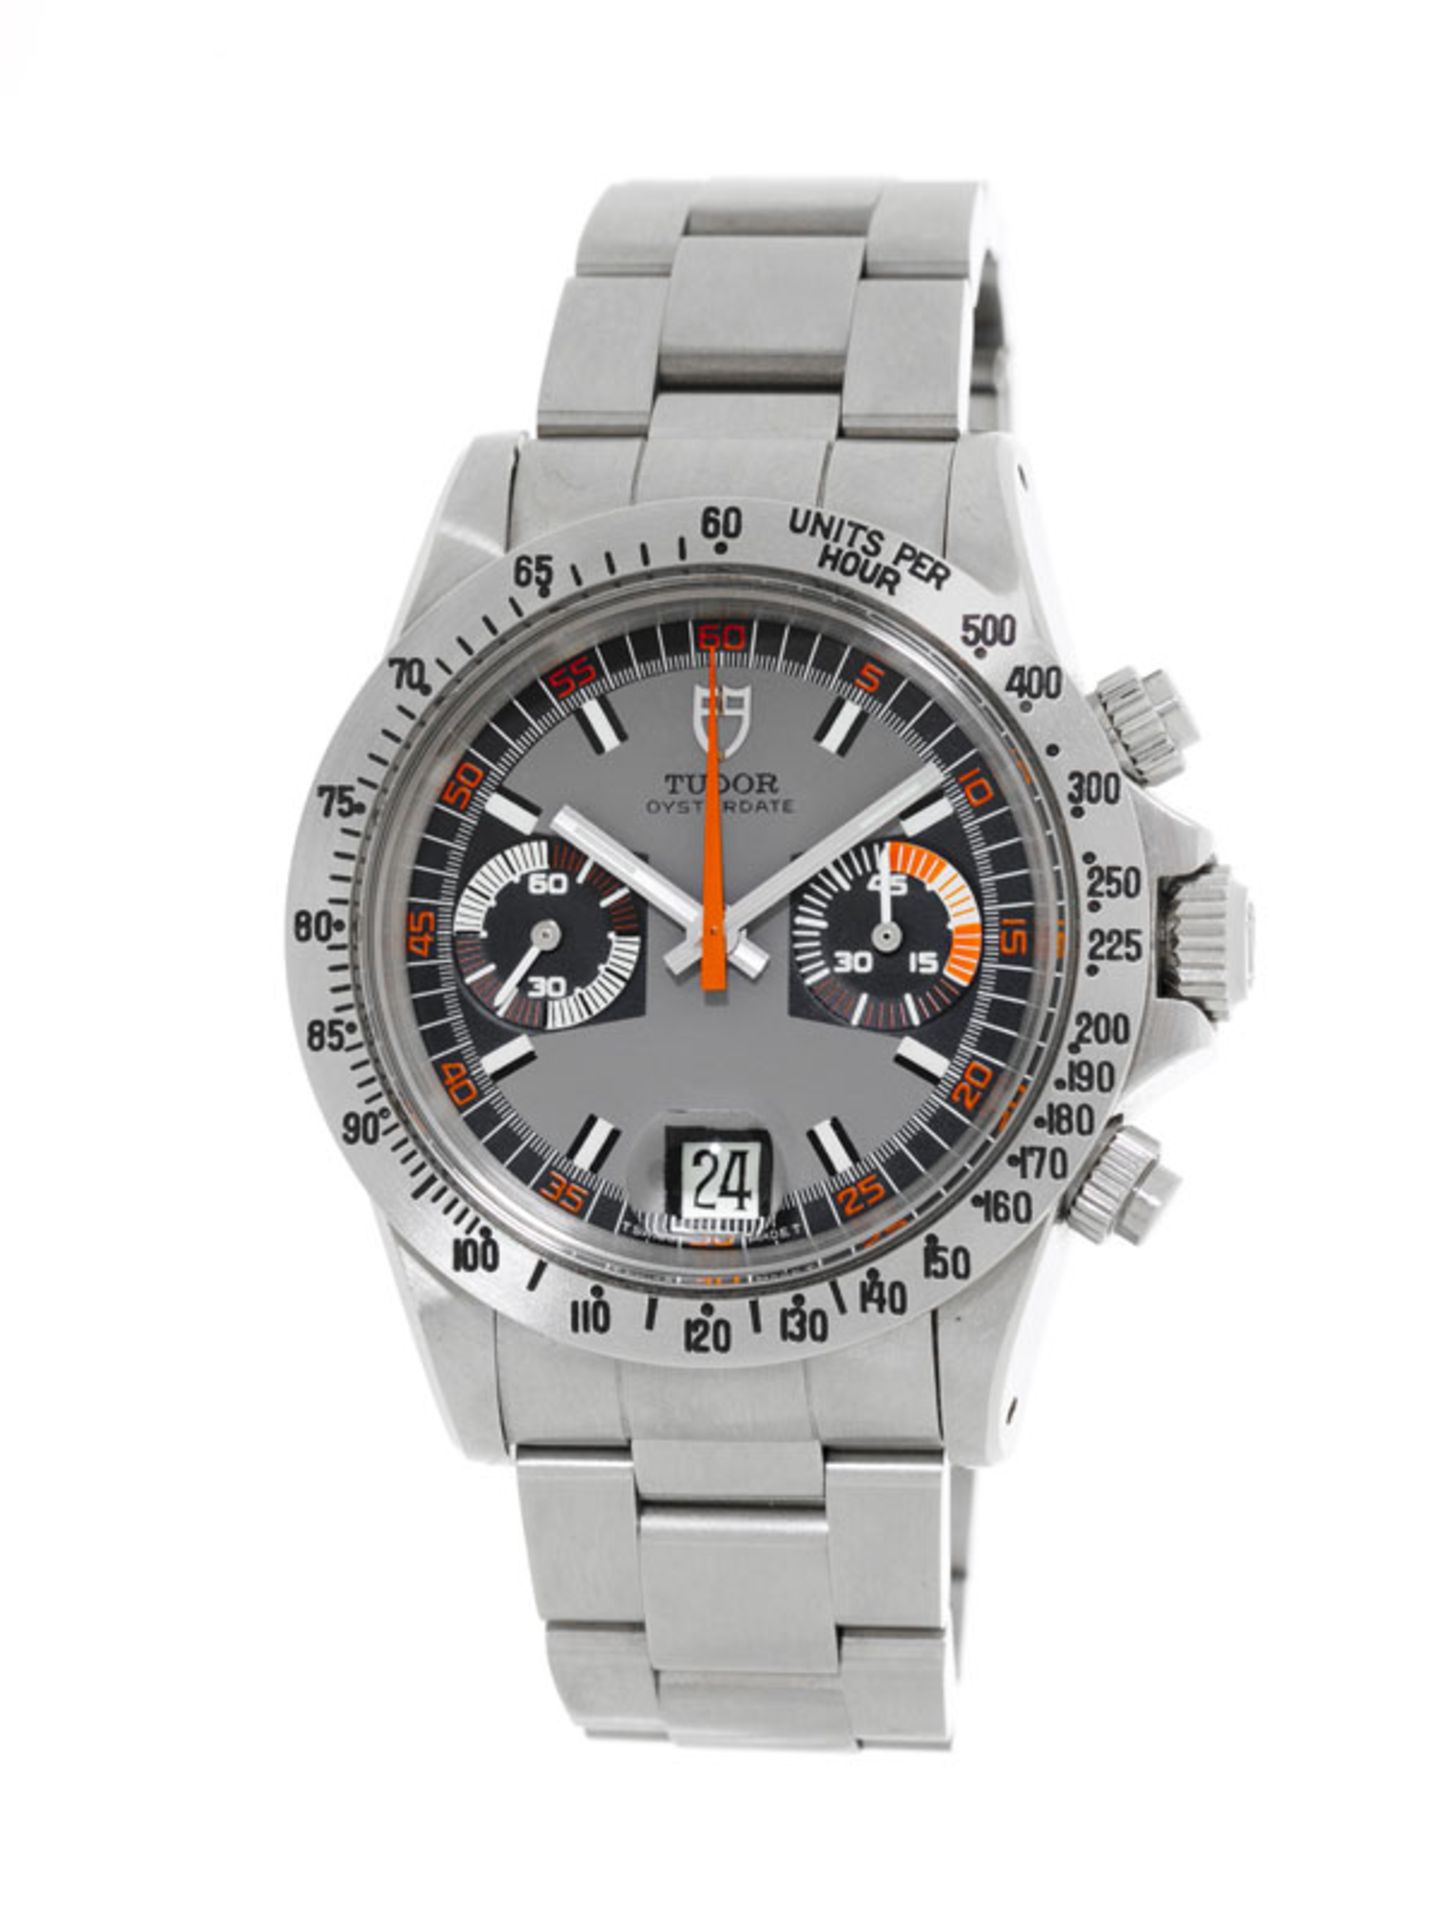 Tudor, Monte Carlo, réf. 7159/0, montre-bracelet chronographe en acier, années 1970, écrinTu